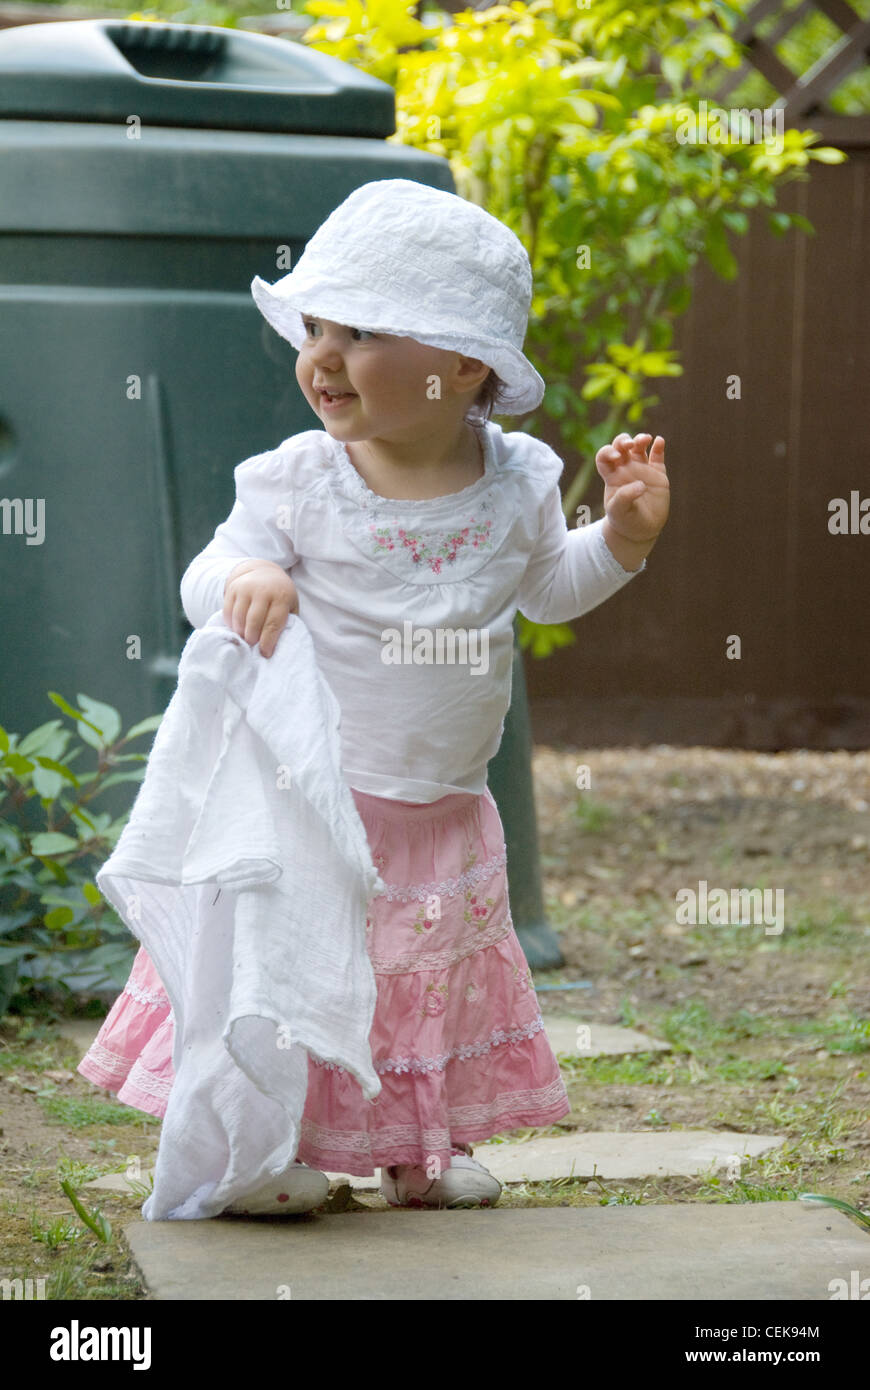 Ein weibliches Baby, tragen eine weiße Sommerhut, weißen Top und rosa Rock, stehen im Garten, hält ein Musselin-Quadrat, lächelnd, Stockfoto